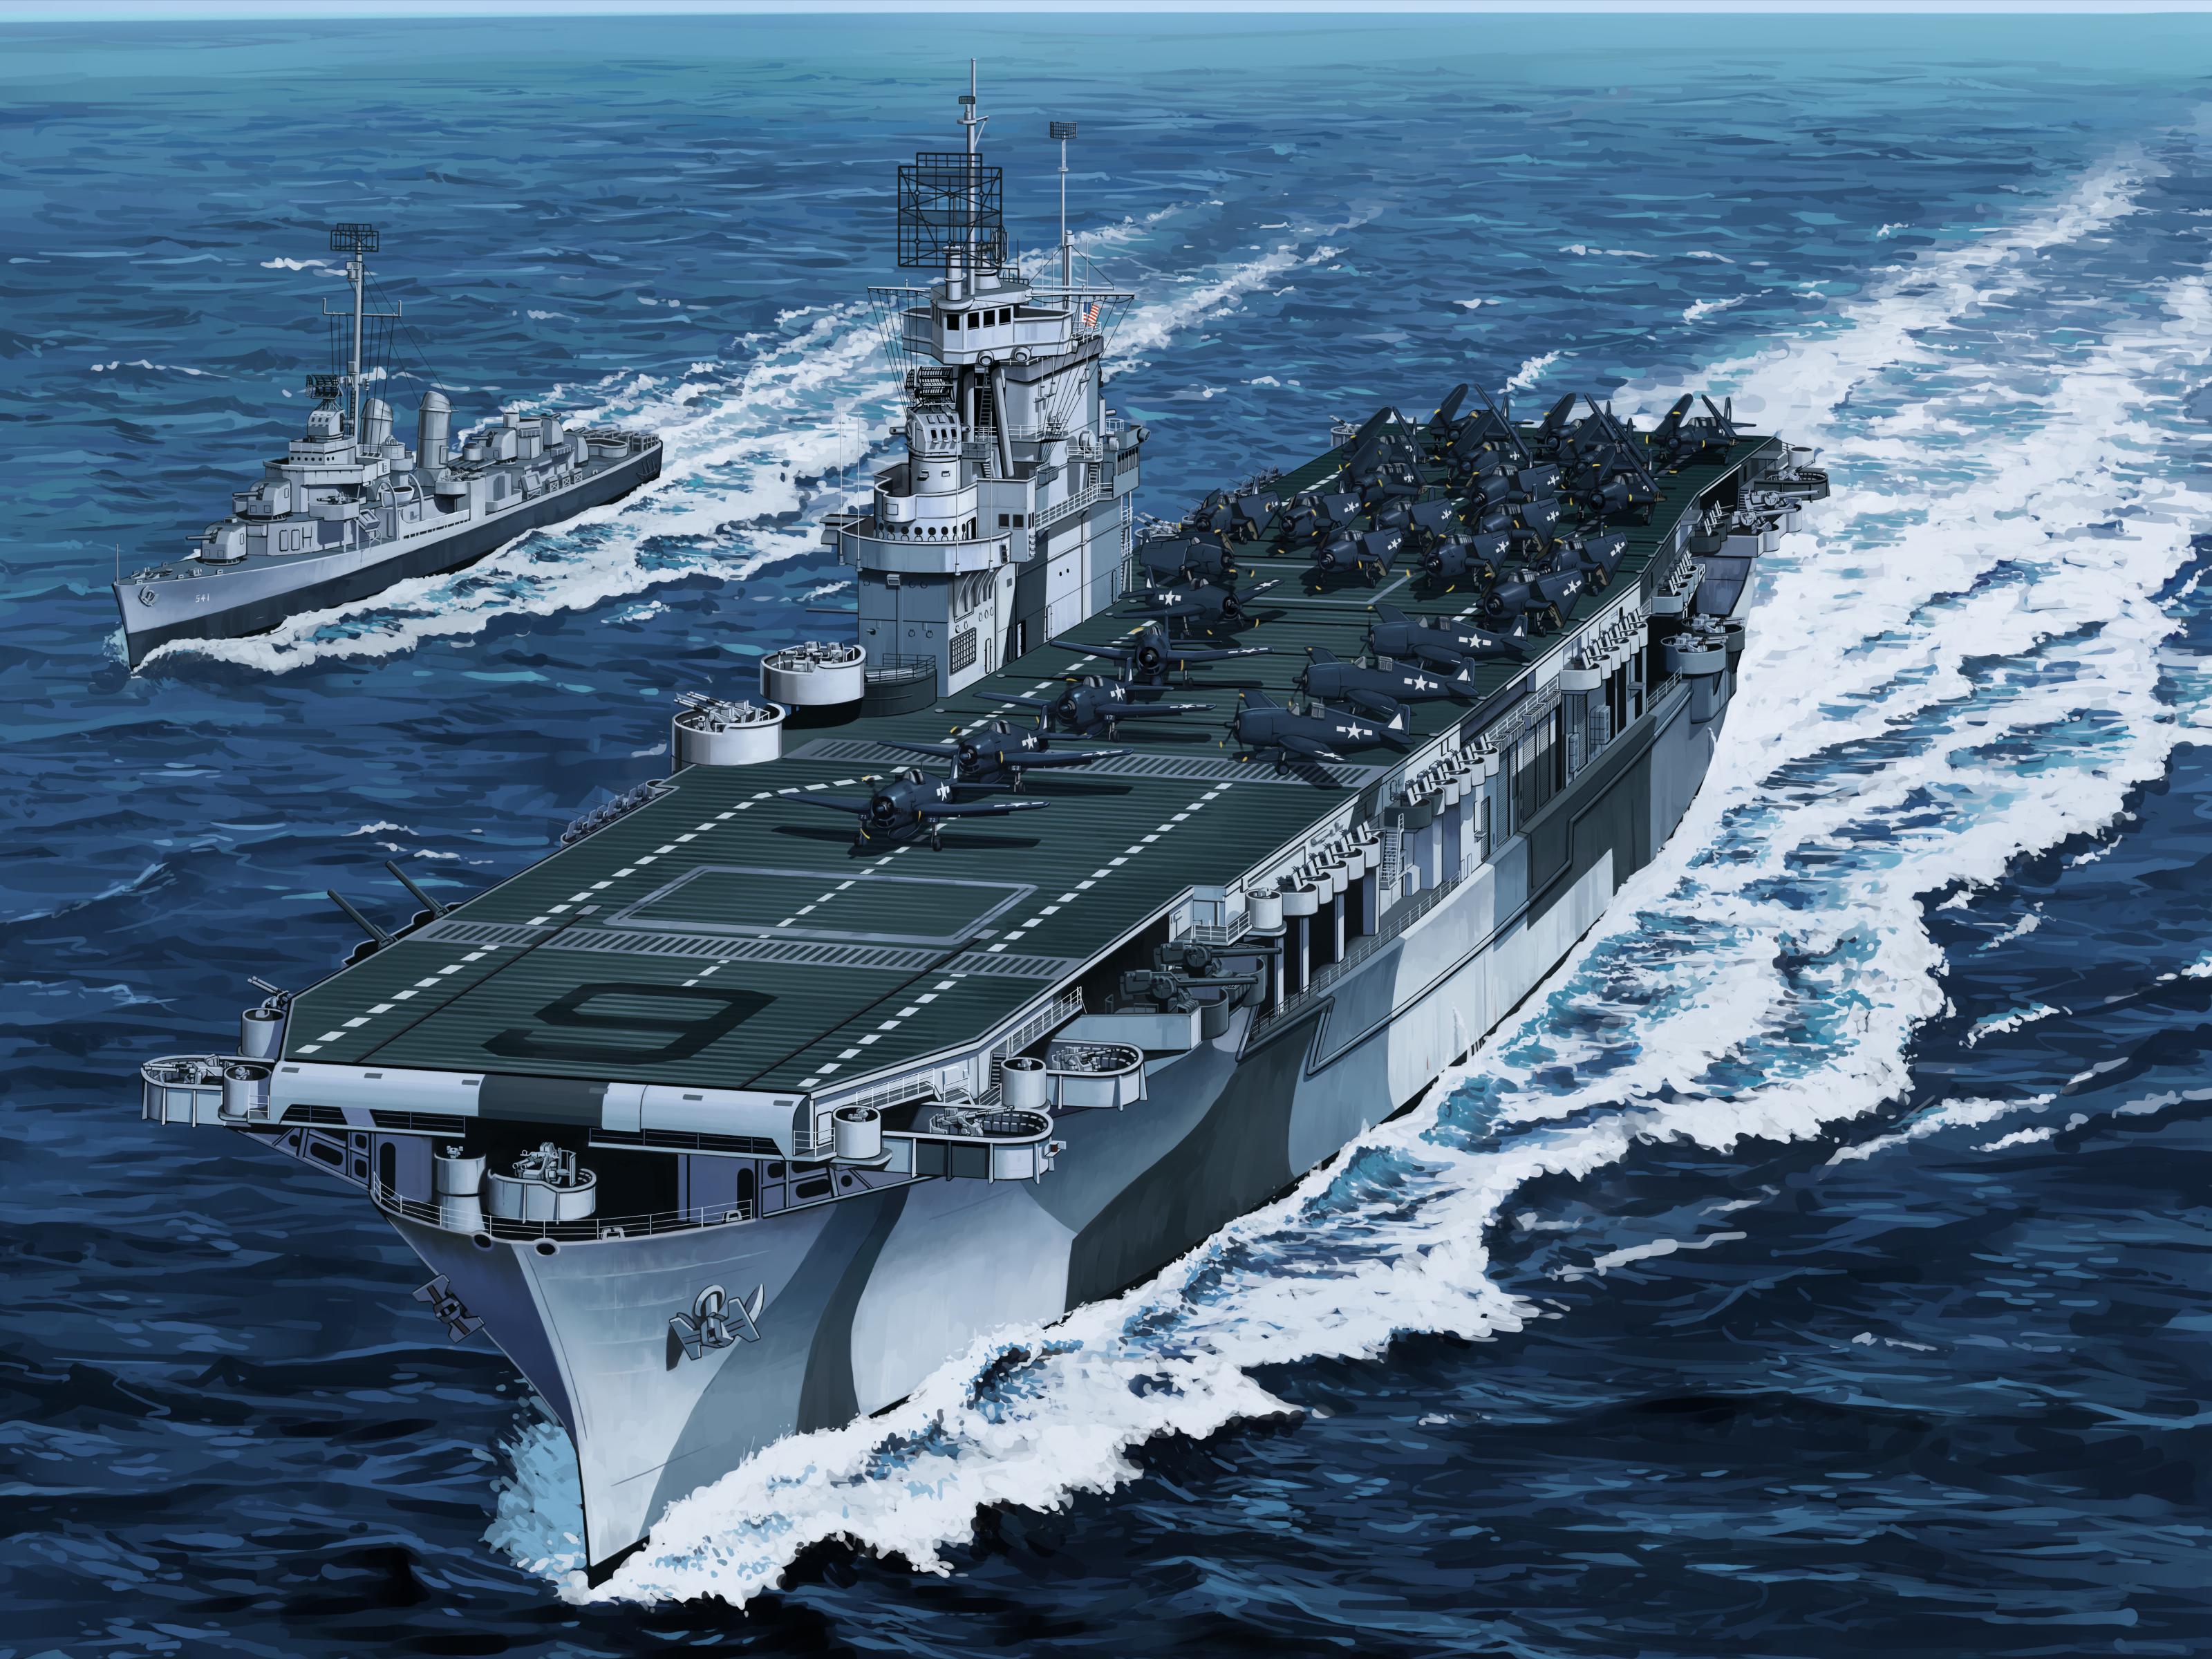 USS企业号